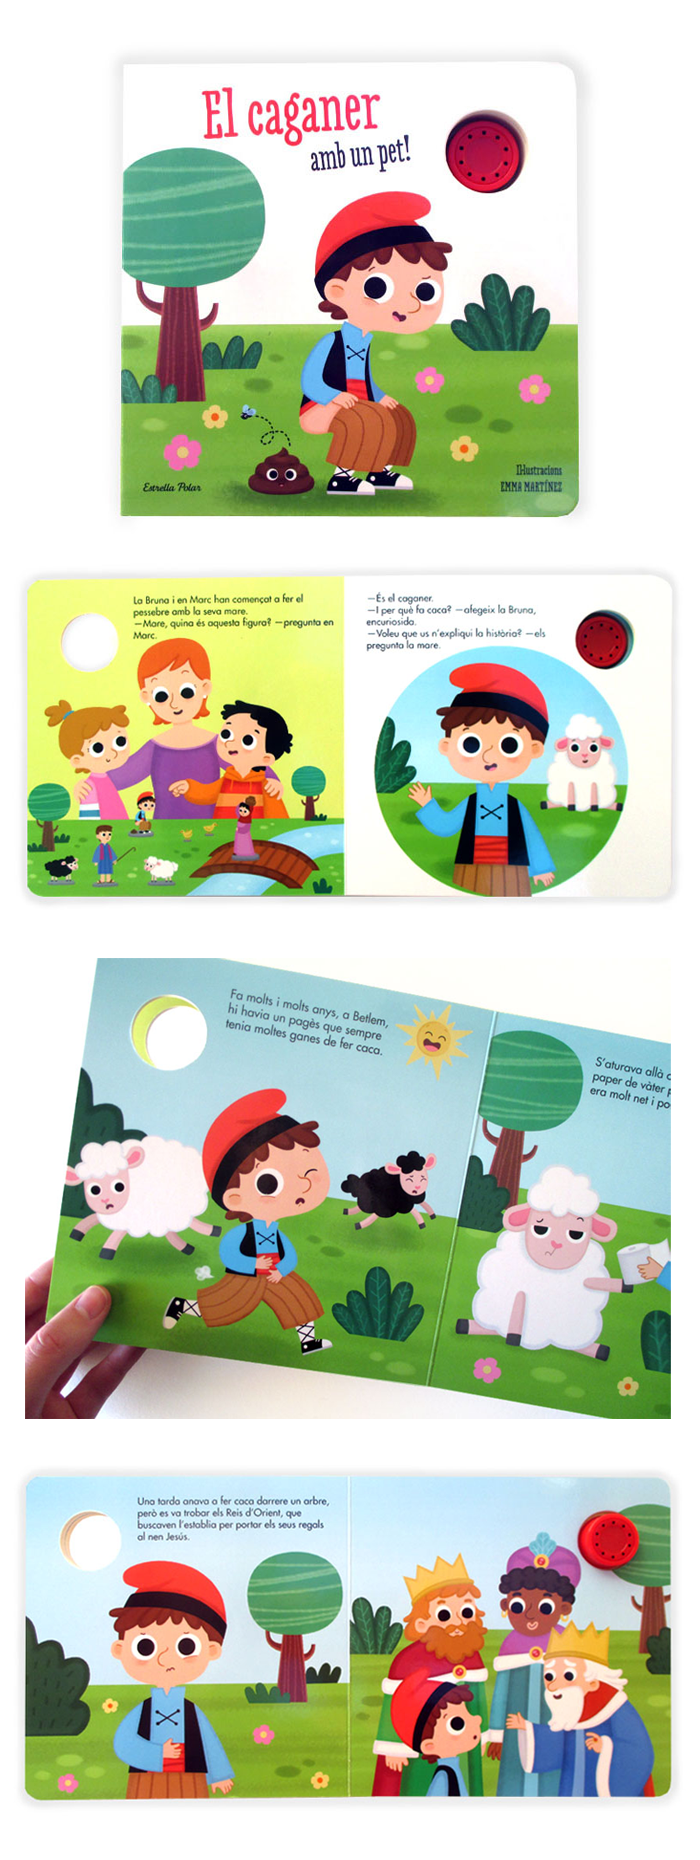 ChildrenIllustration childrenbook soundbook toybook Christmas caganer kids kidlit traditions ilustracioninfantil